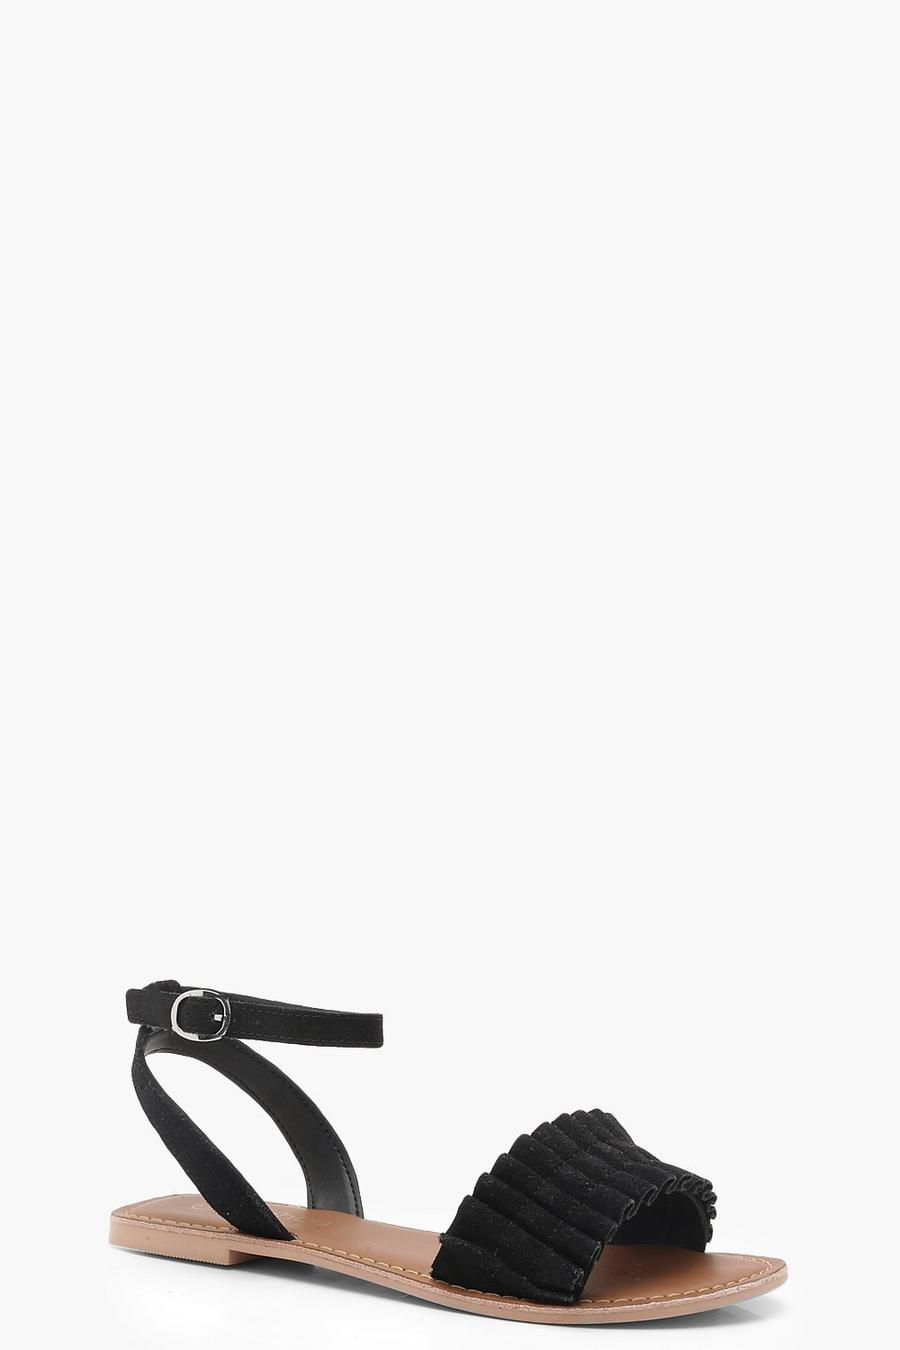 Black Frill Detail Ankle Strap Suede Sandals image number 1